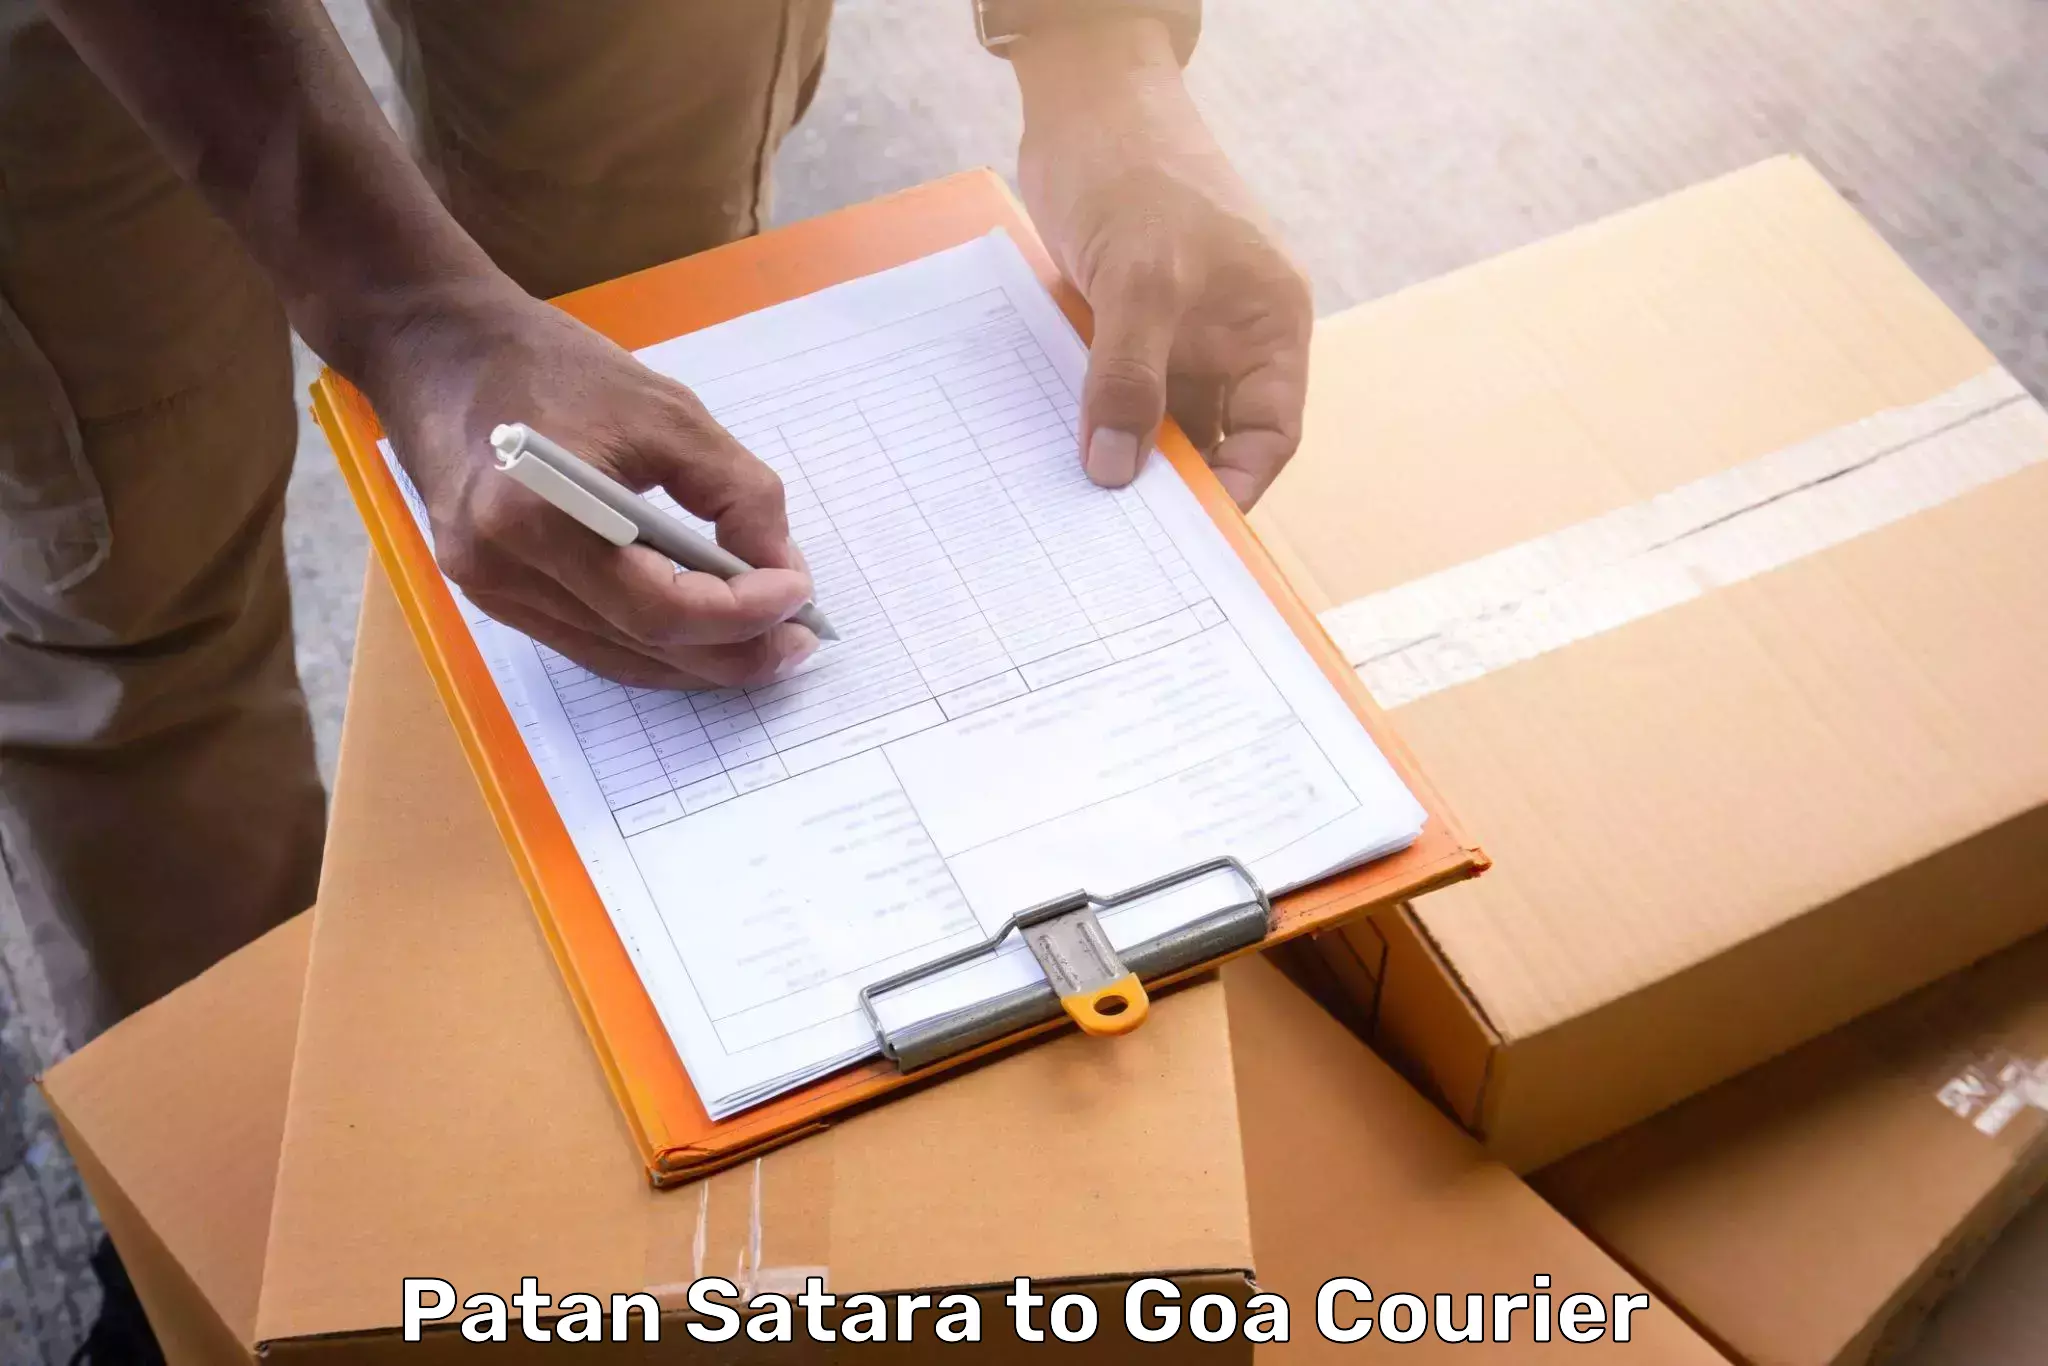 Same day baggage transport Patan Satara to Ponda